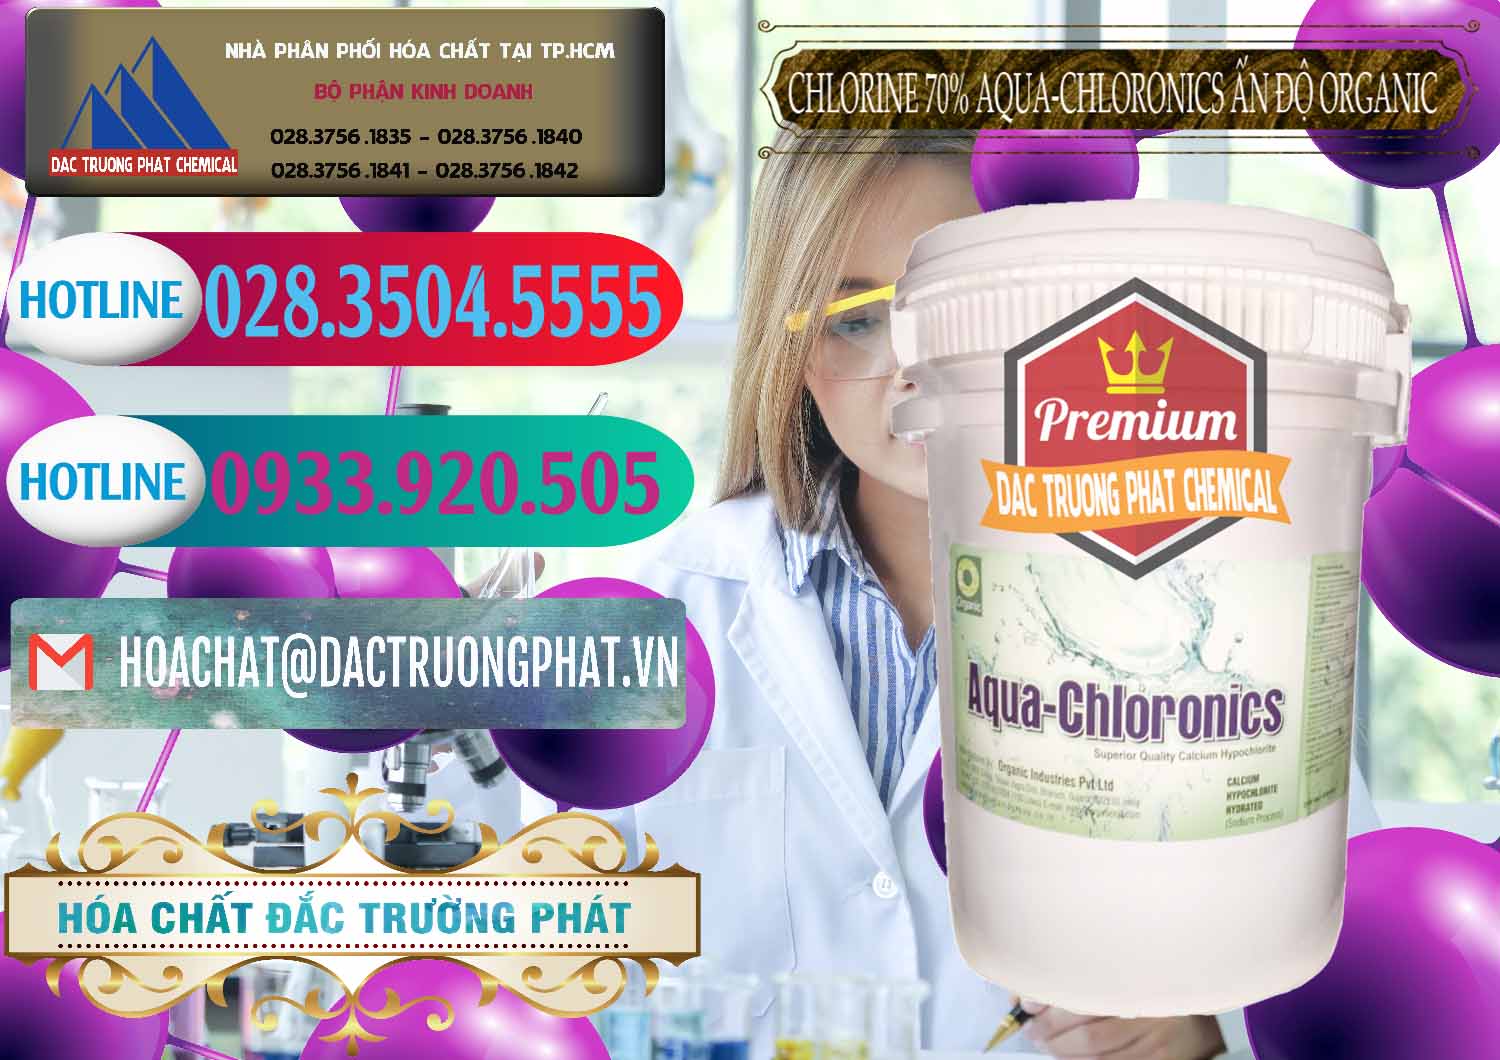 Công ty bán - phân phối Chlorine – Clorin 70% Aqua-Chloronics Ấn Độ Organic India - 0211 - Đơn vị phân phối & cung cấp hóa chất tại TP.HCM - truongphat.vn